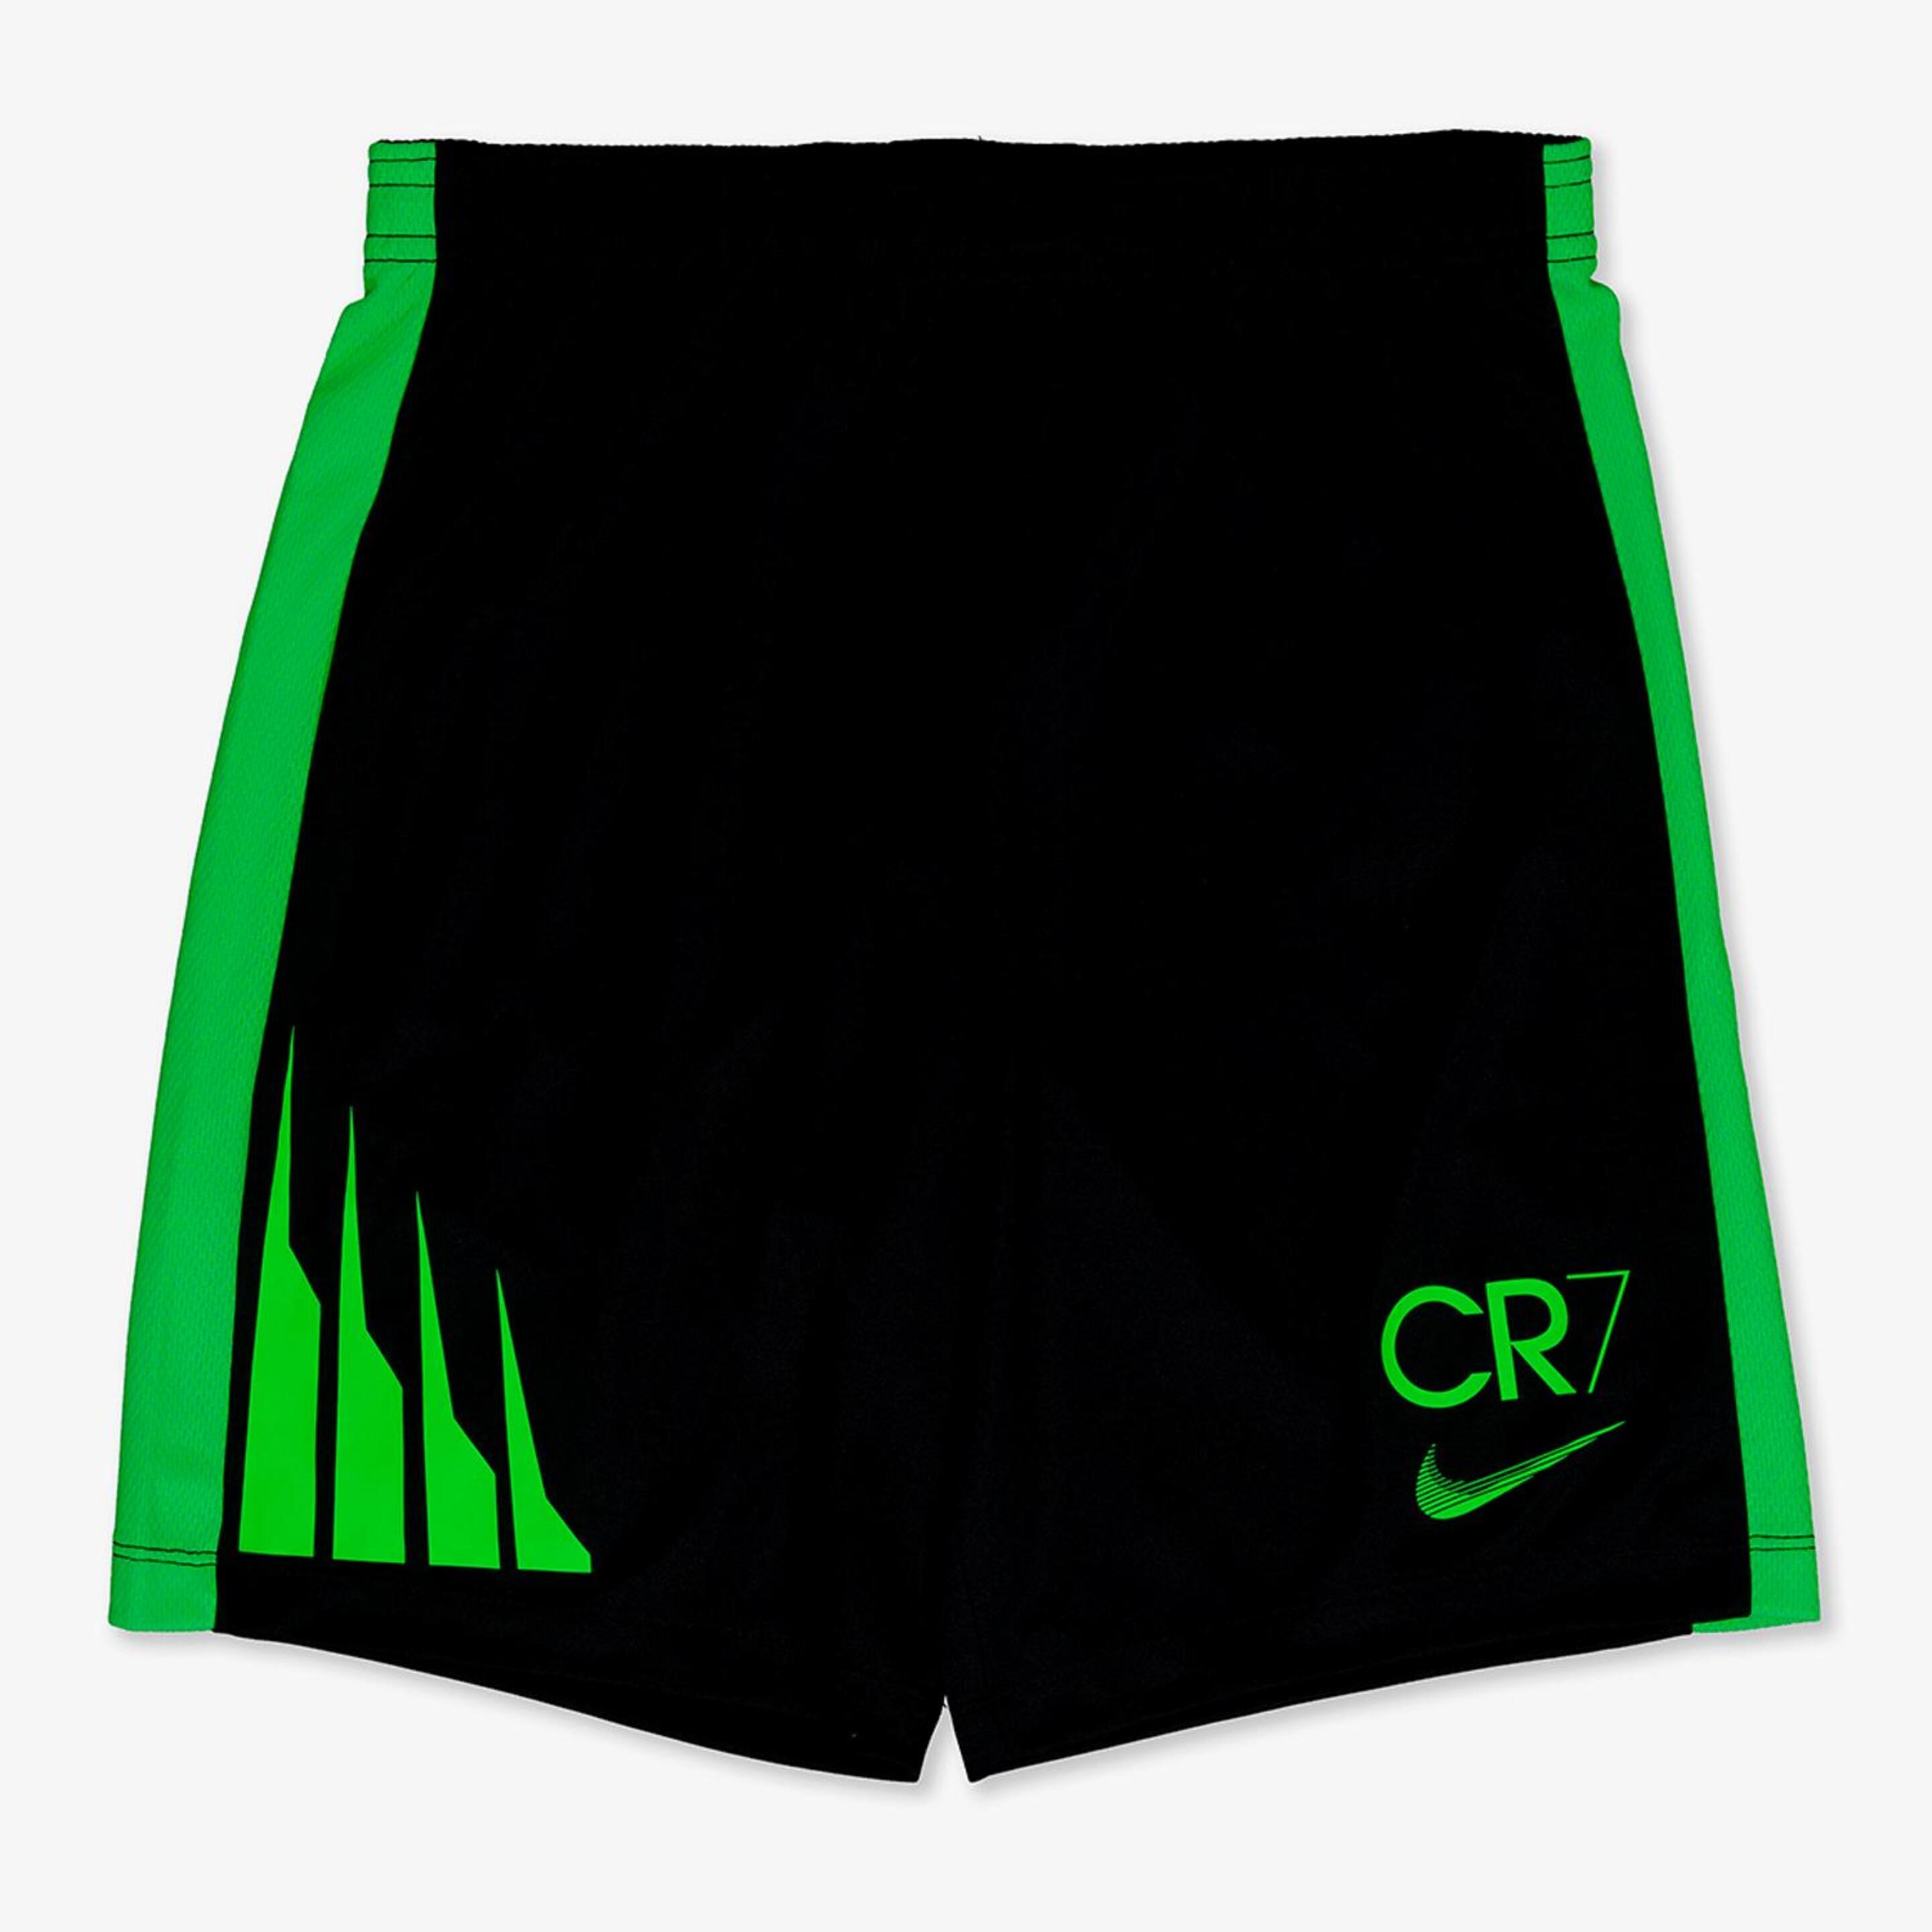 Nike Cr7